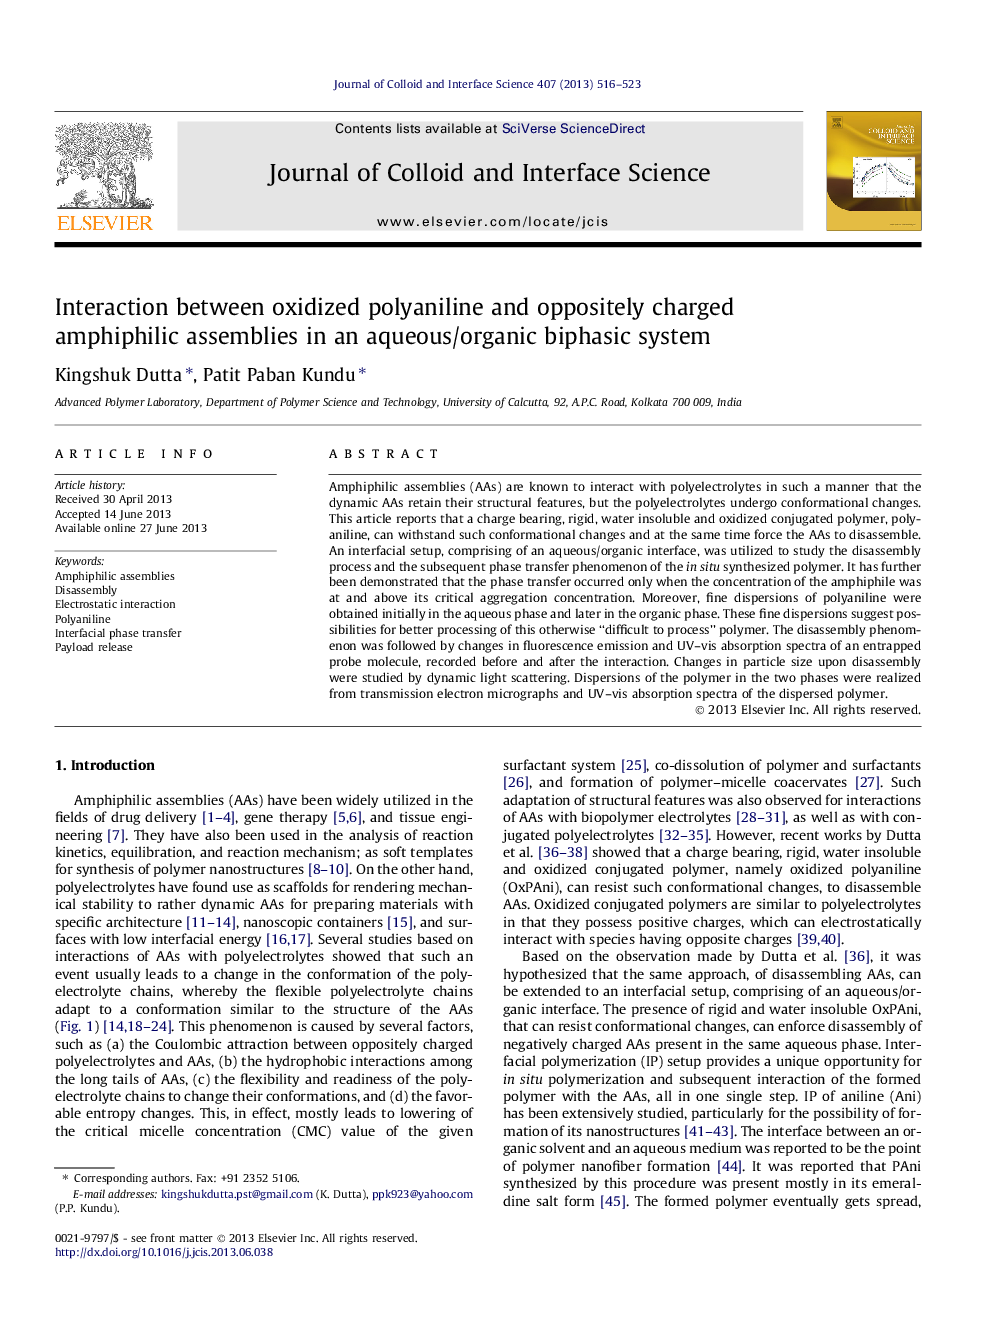 تعامل بین پلی یانیل اکسید شده و مجتمع های آمفیفیلی متشکل از مخلوط در یک سیستم دوفازی آبی / آلی 